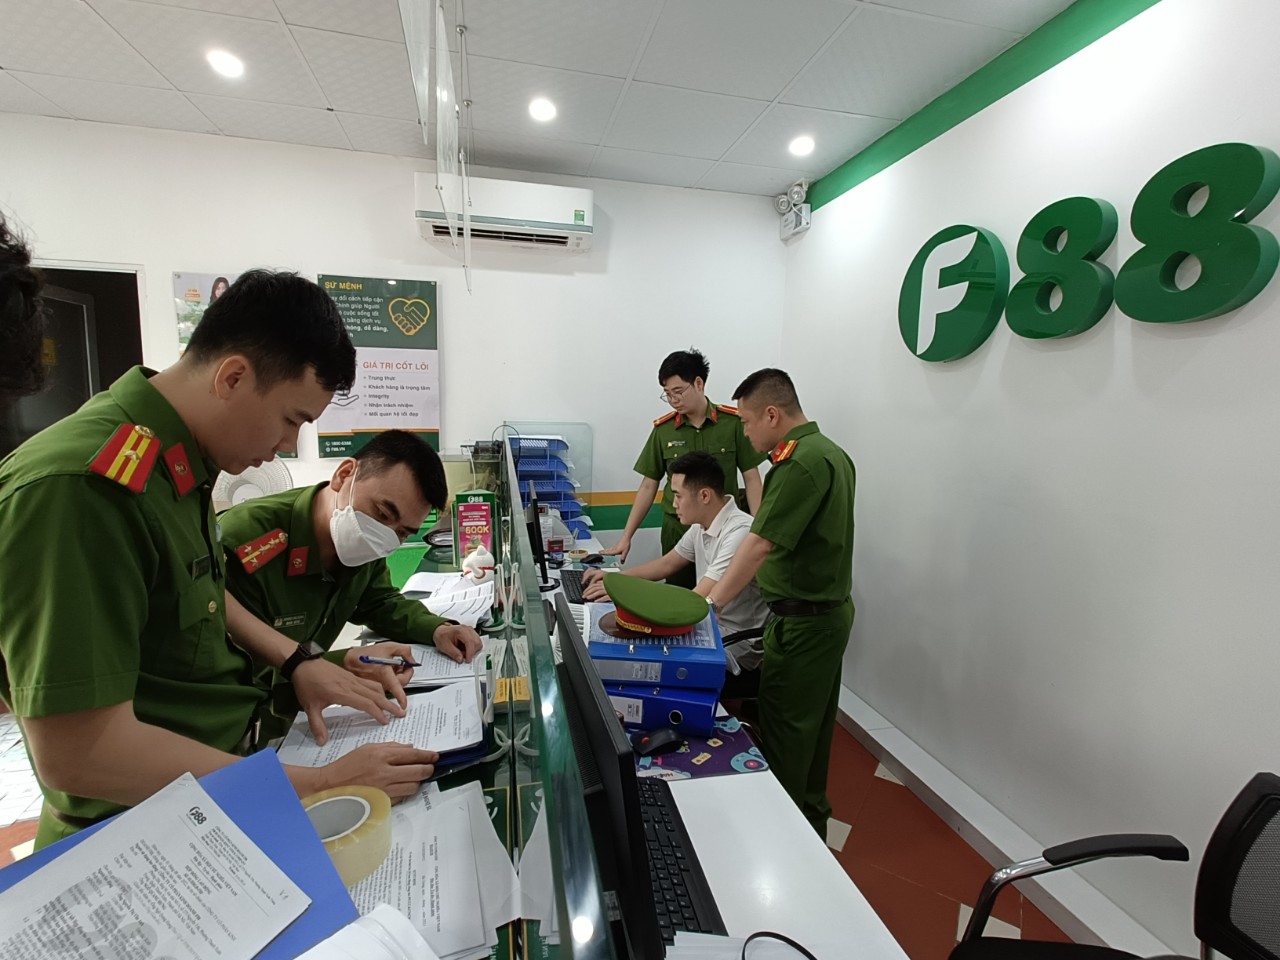 Cơ quan công an kiểm tra các địa điểm kinh doanh của F88 tại Bắc Giang.